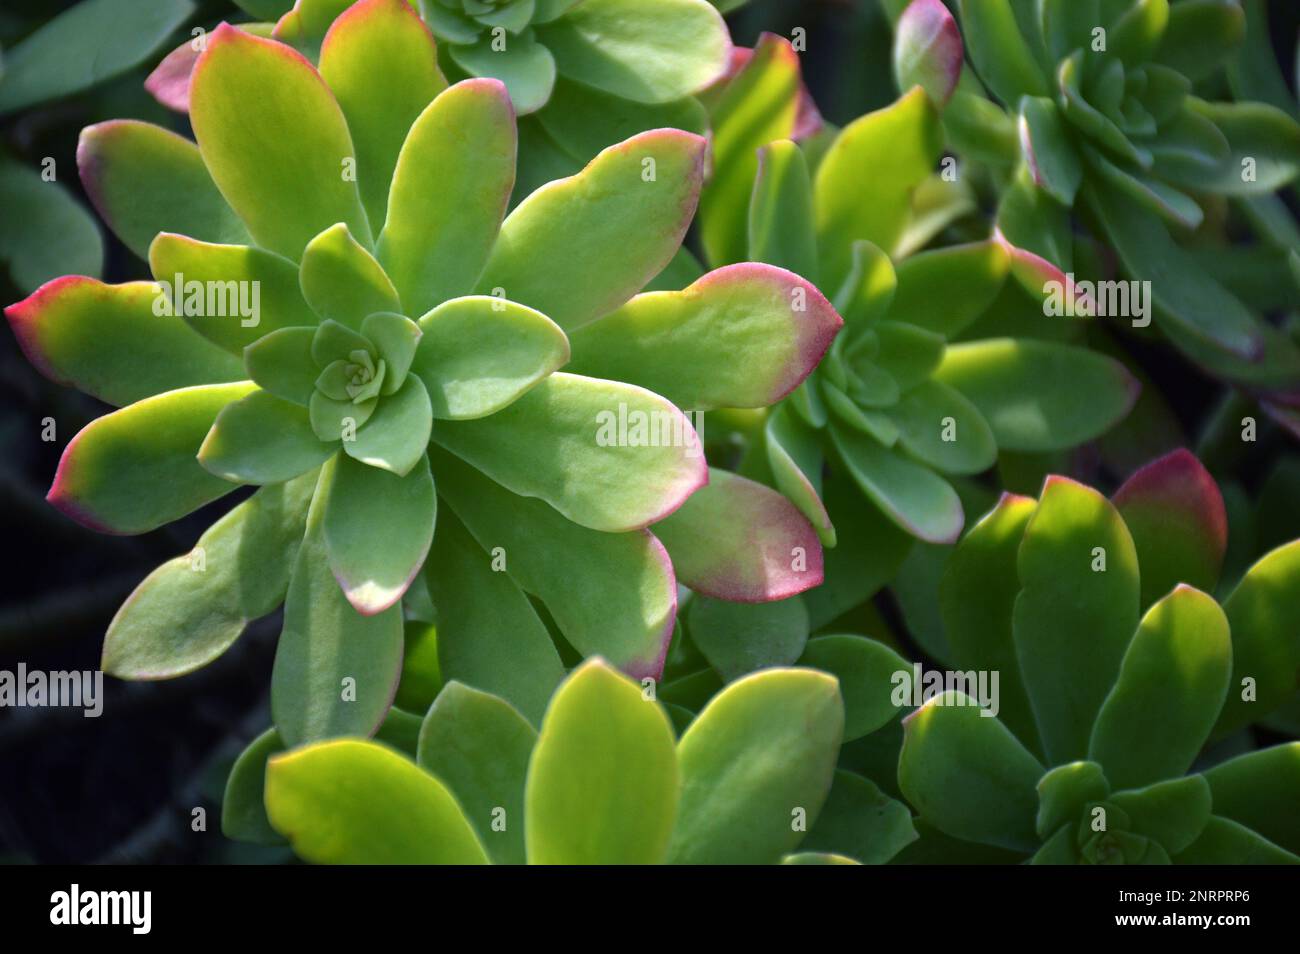 Top view of Sedum palmeri succulent plant Stock Photo